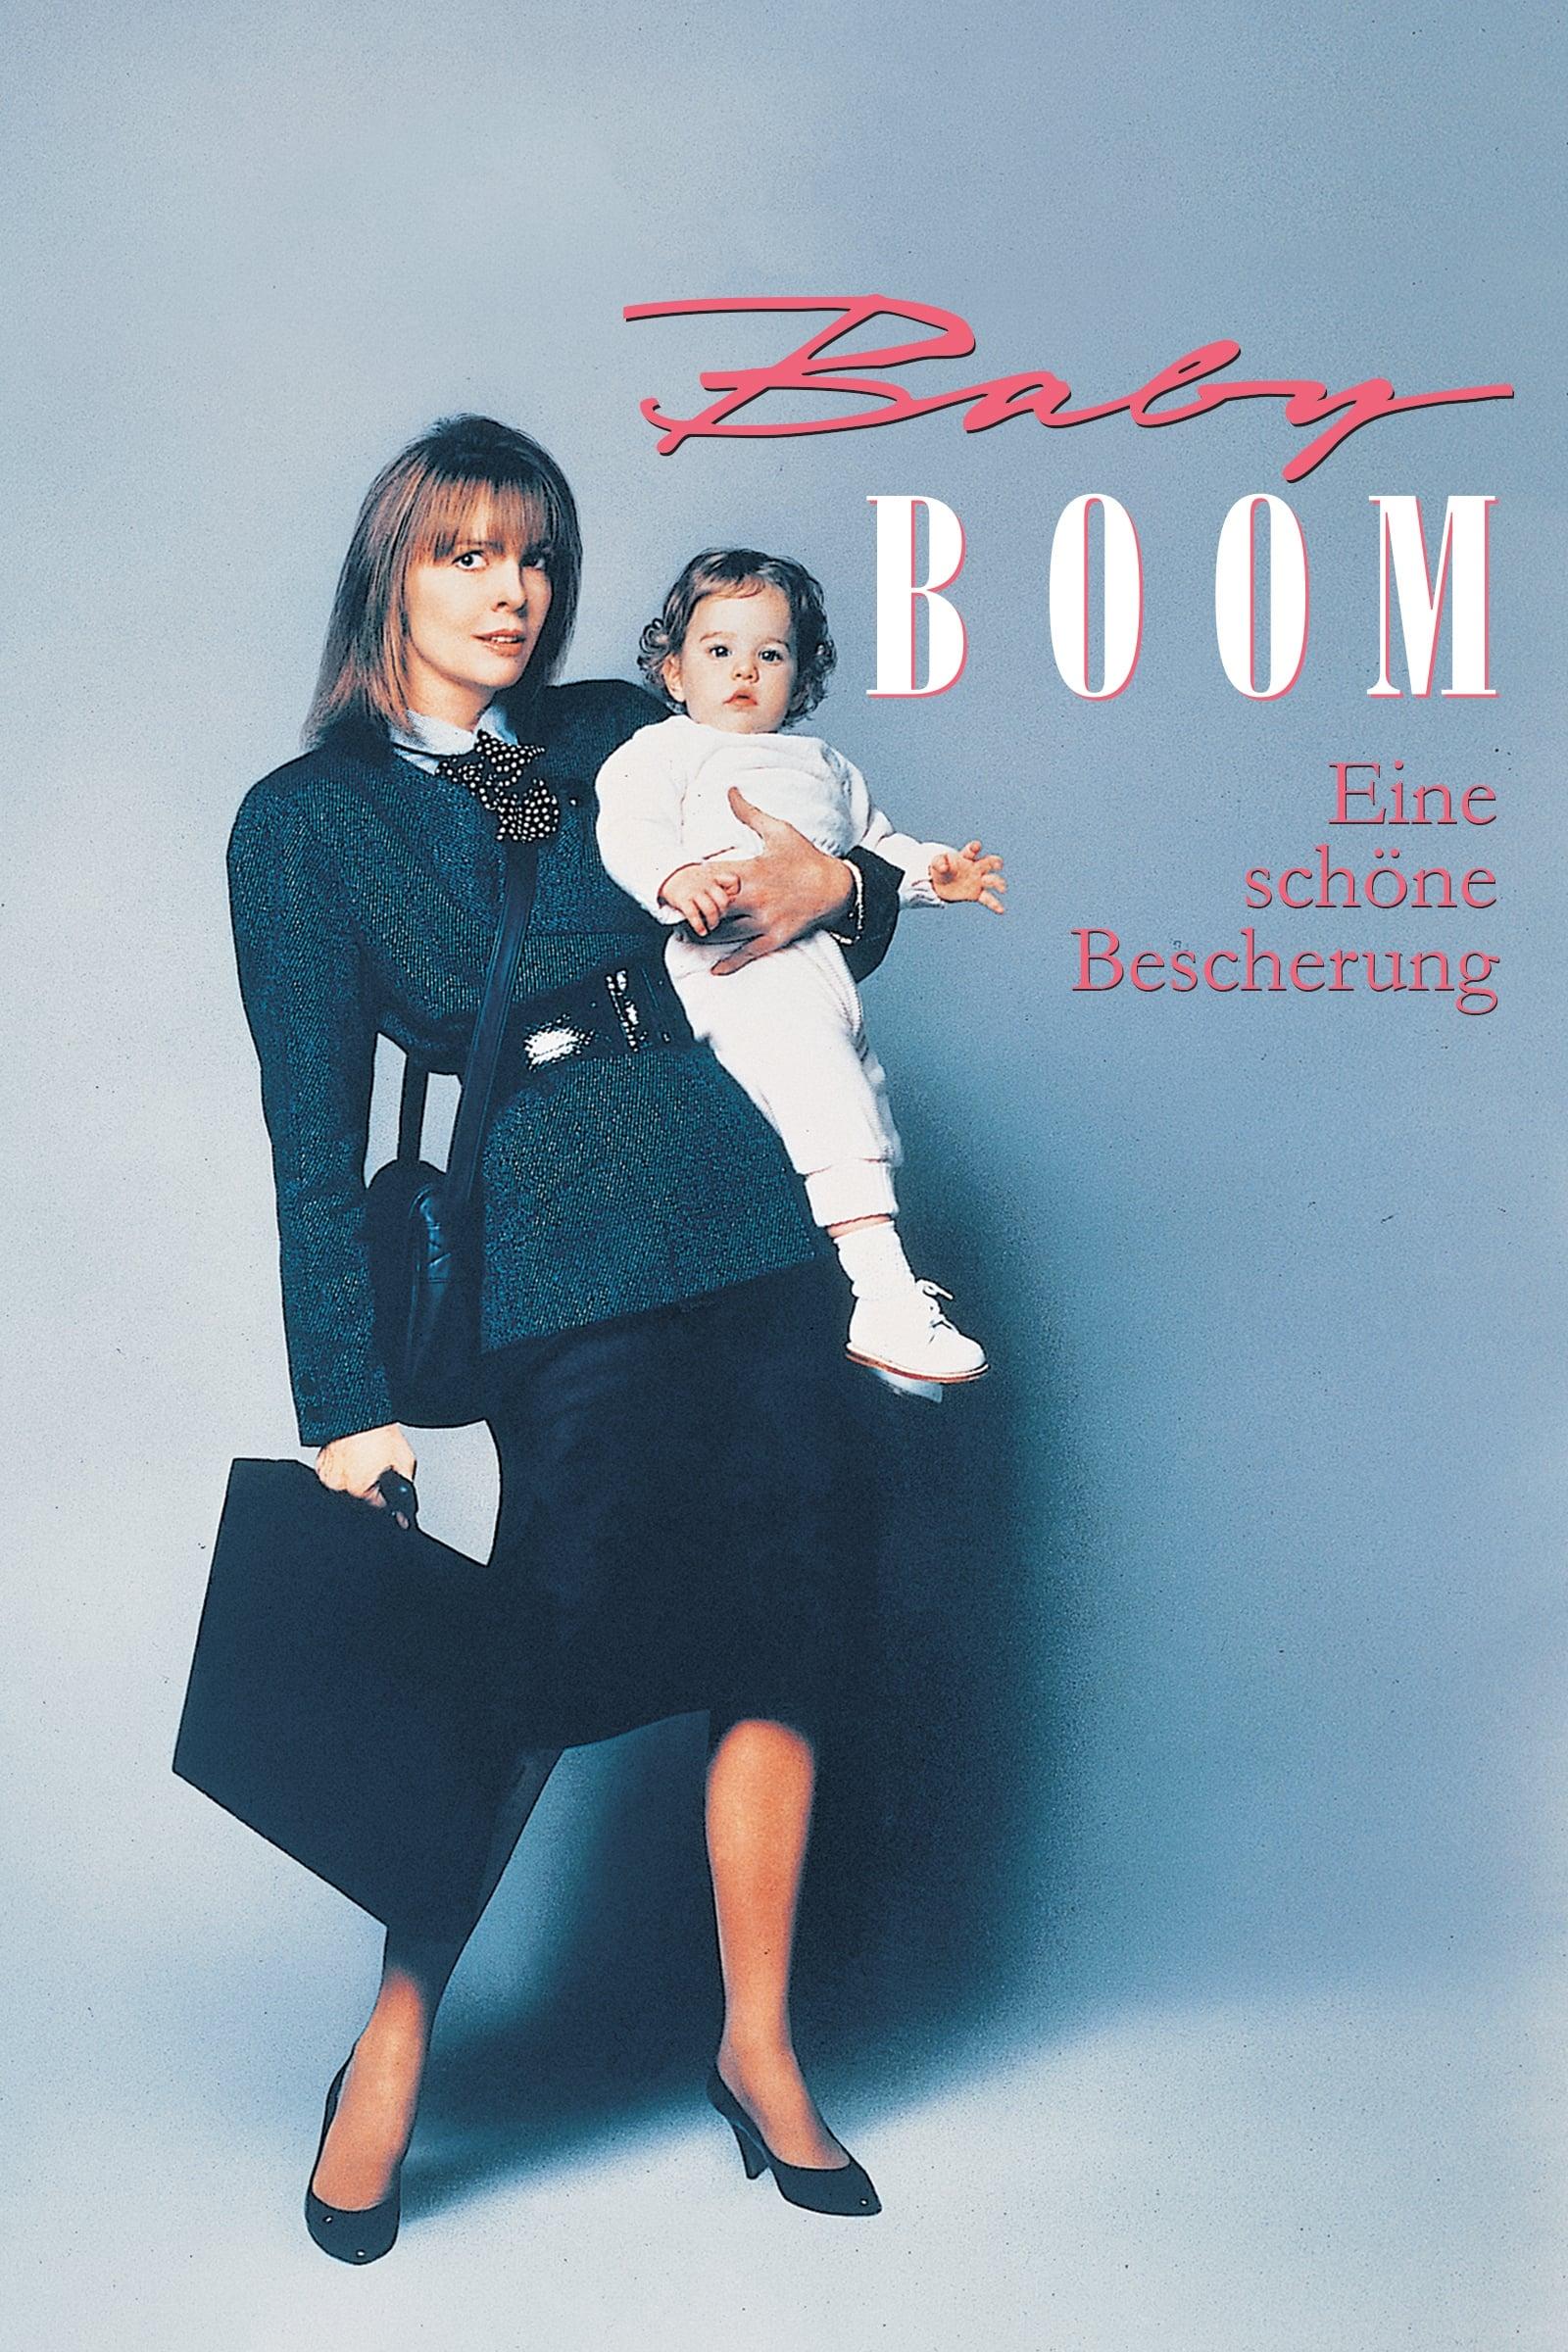 Baby Boom - Eine schöne Bescherung poster